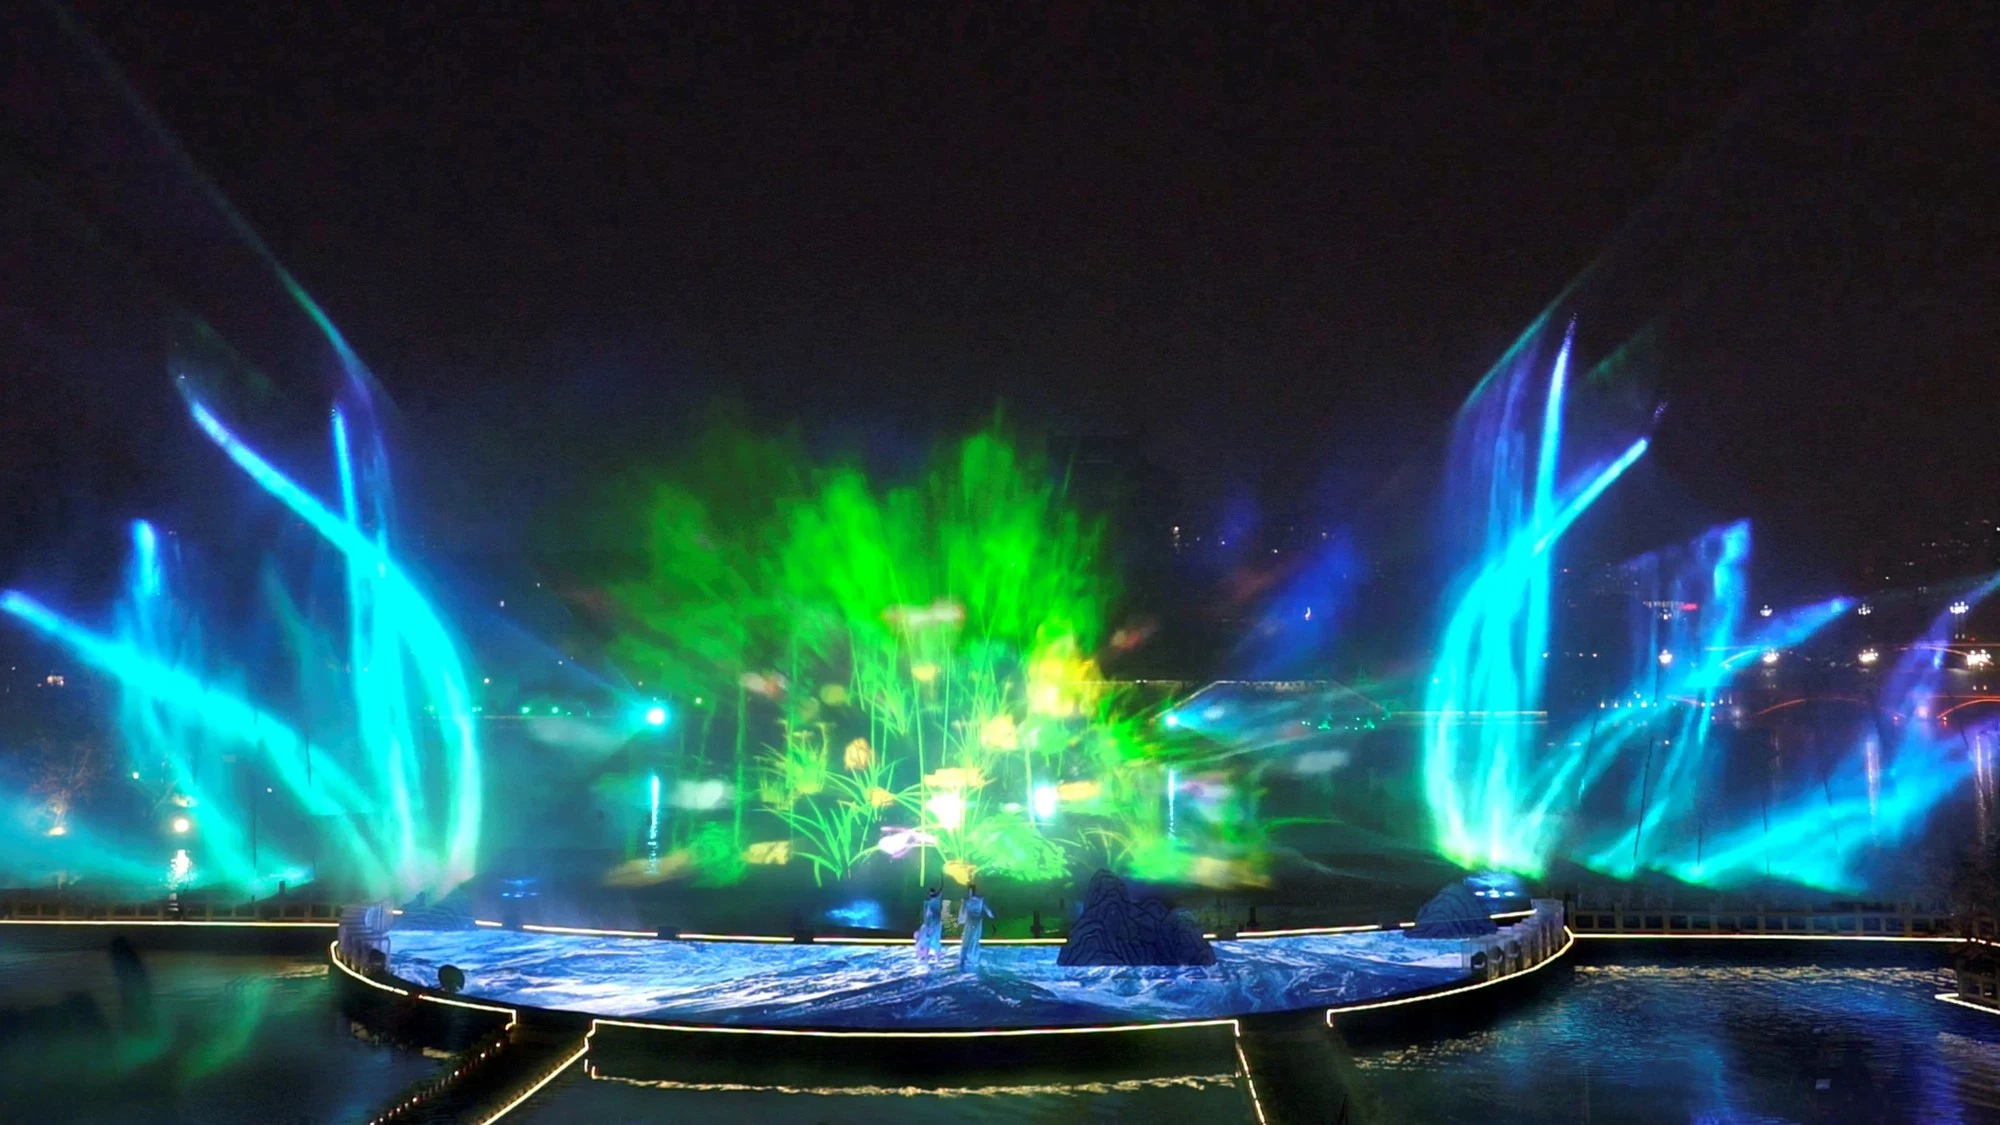 جولة ليلية لمشاهدة عرض نافورة الموسيقى المائية مع أشعة الليزر الممثلين الخافتة المياه مذهلة عرض الأداء في الداخل وفي الخارج